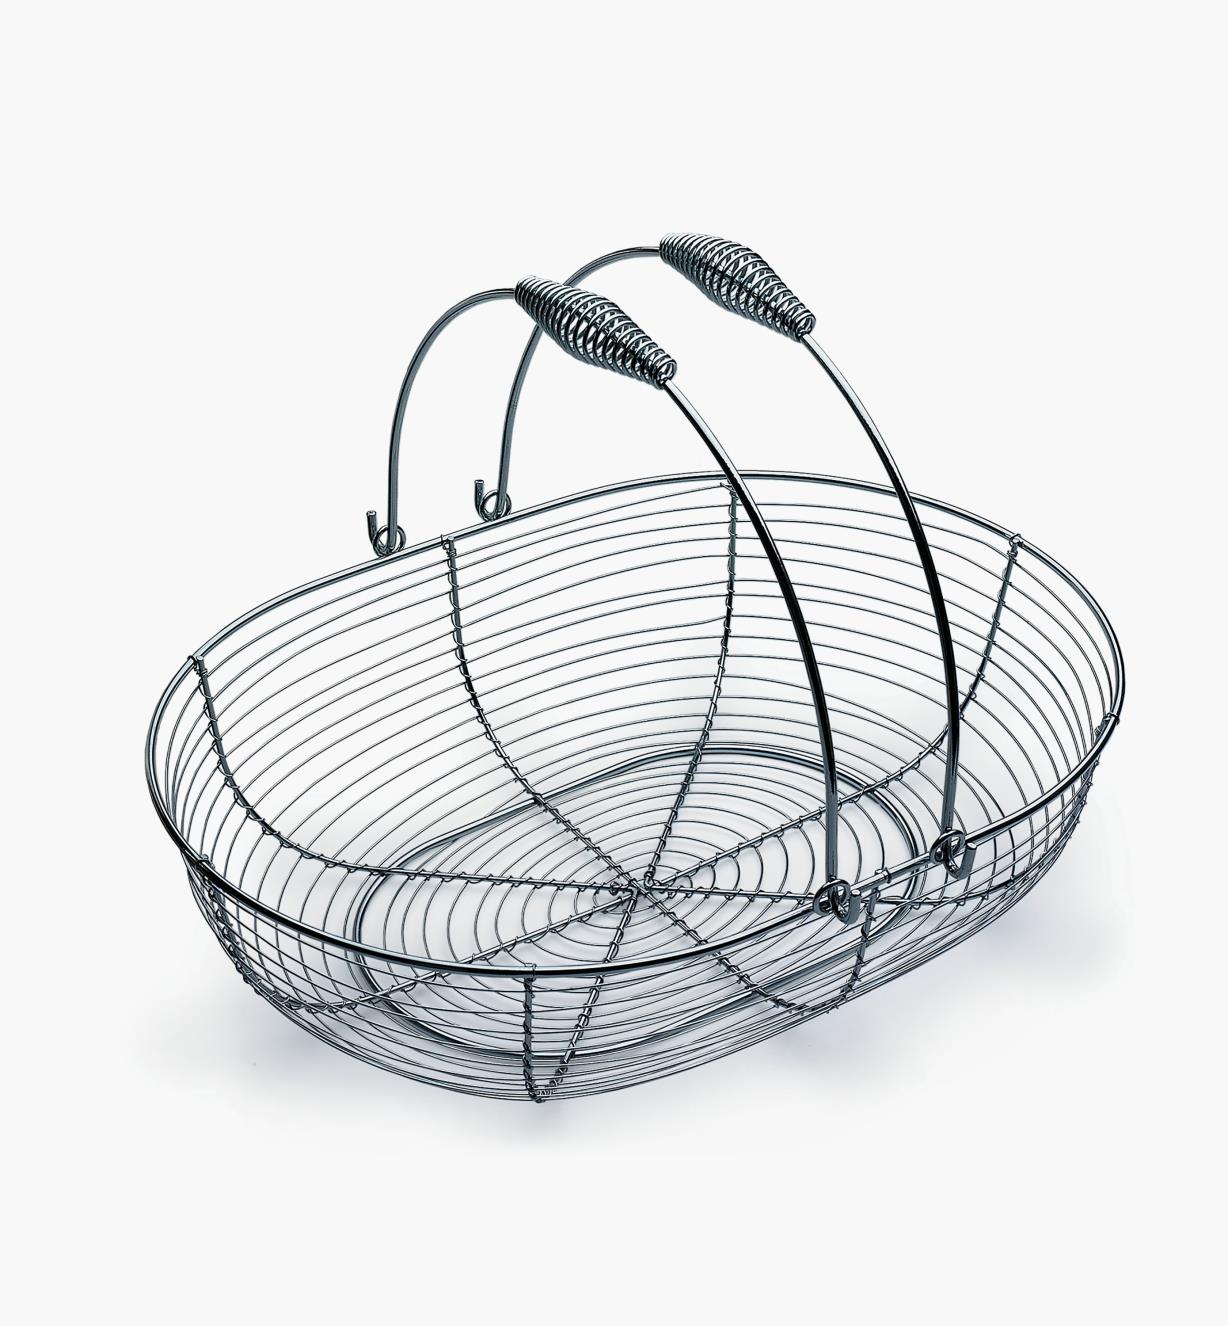 09A0465 - Large Gardener's Wash Basket